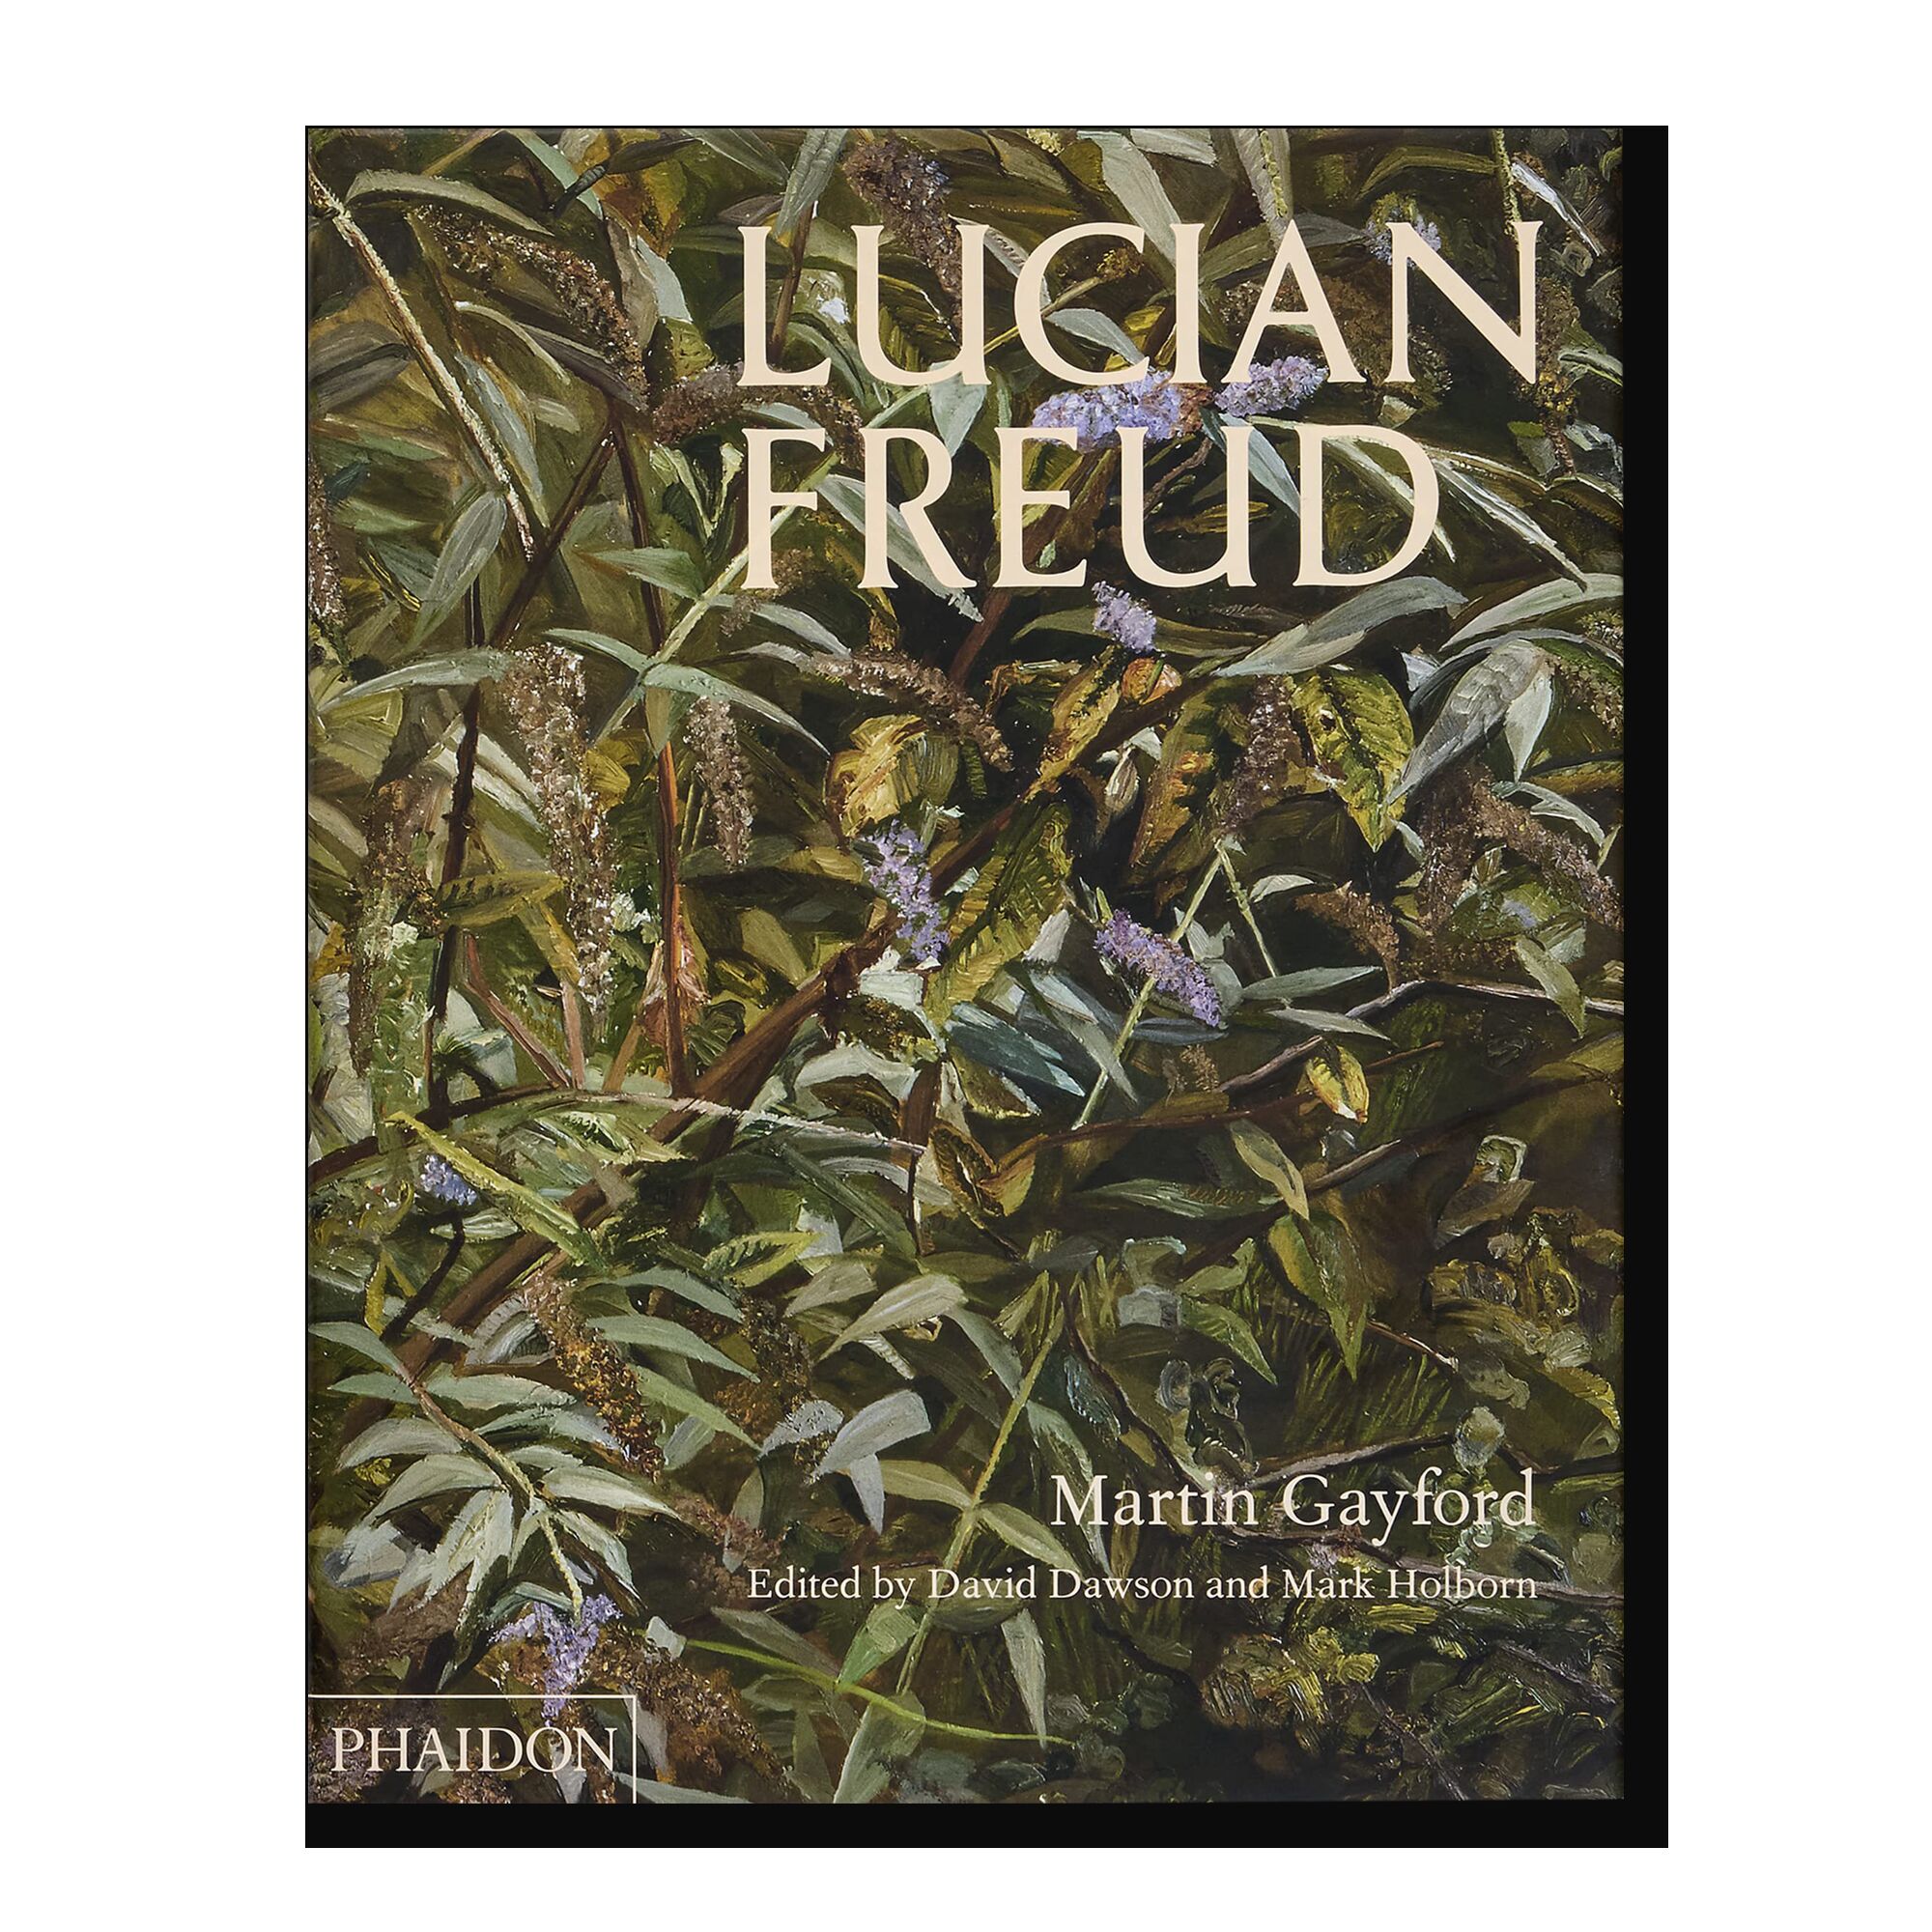 Lucian Freud (Martin Gayford)